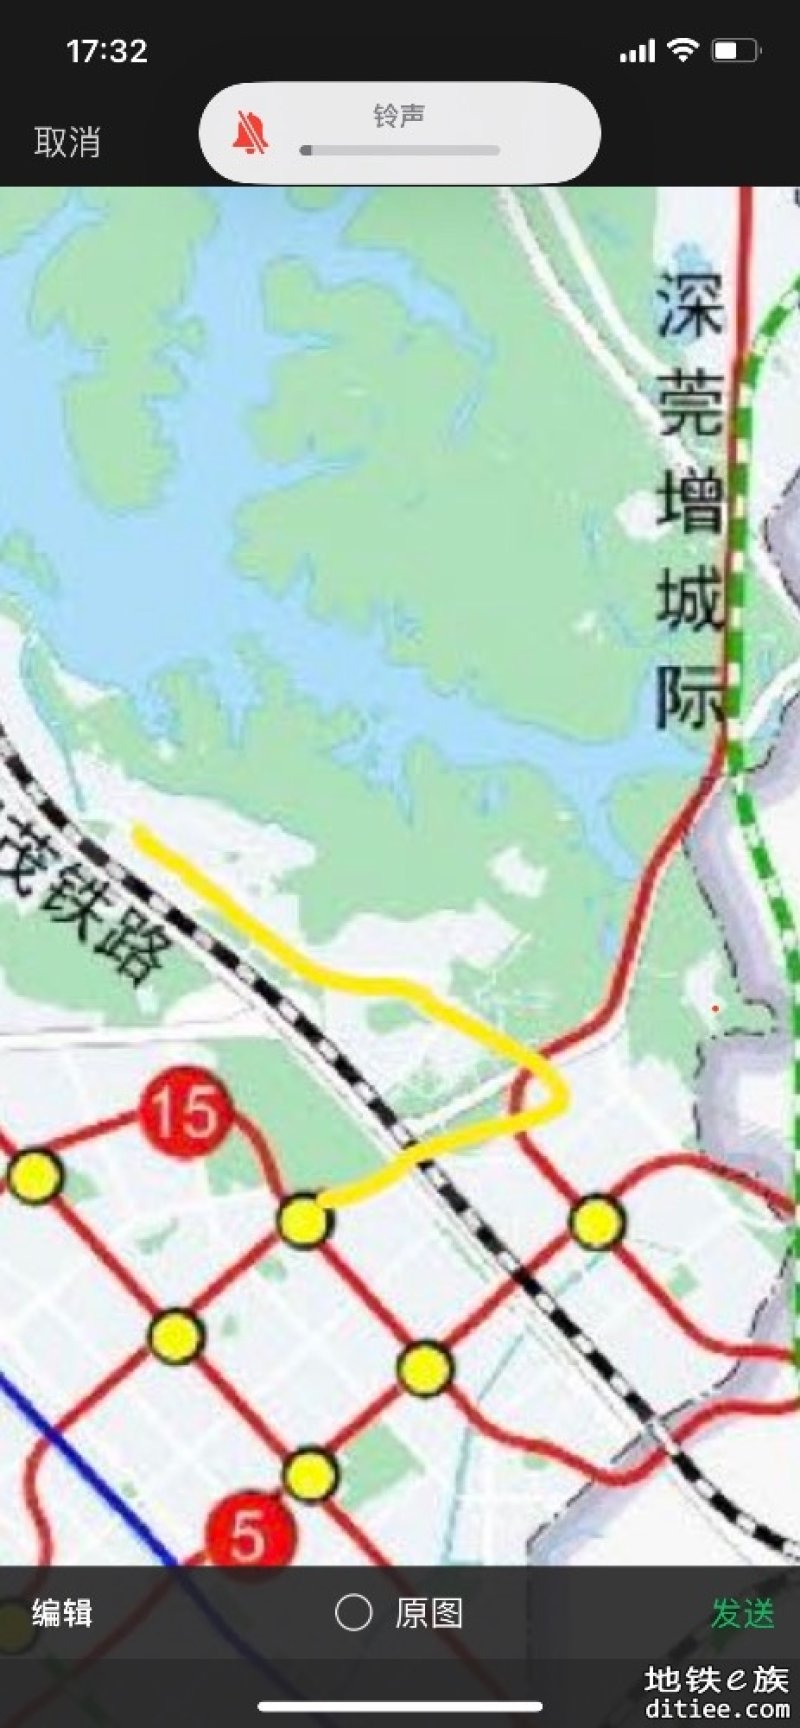 9号线延长到铁岗桃花源的规划看来被宝安区政府放弃了